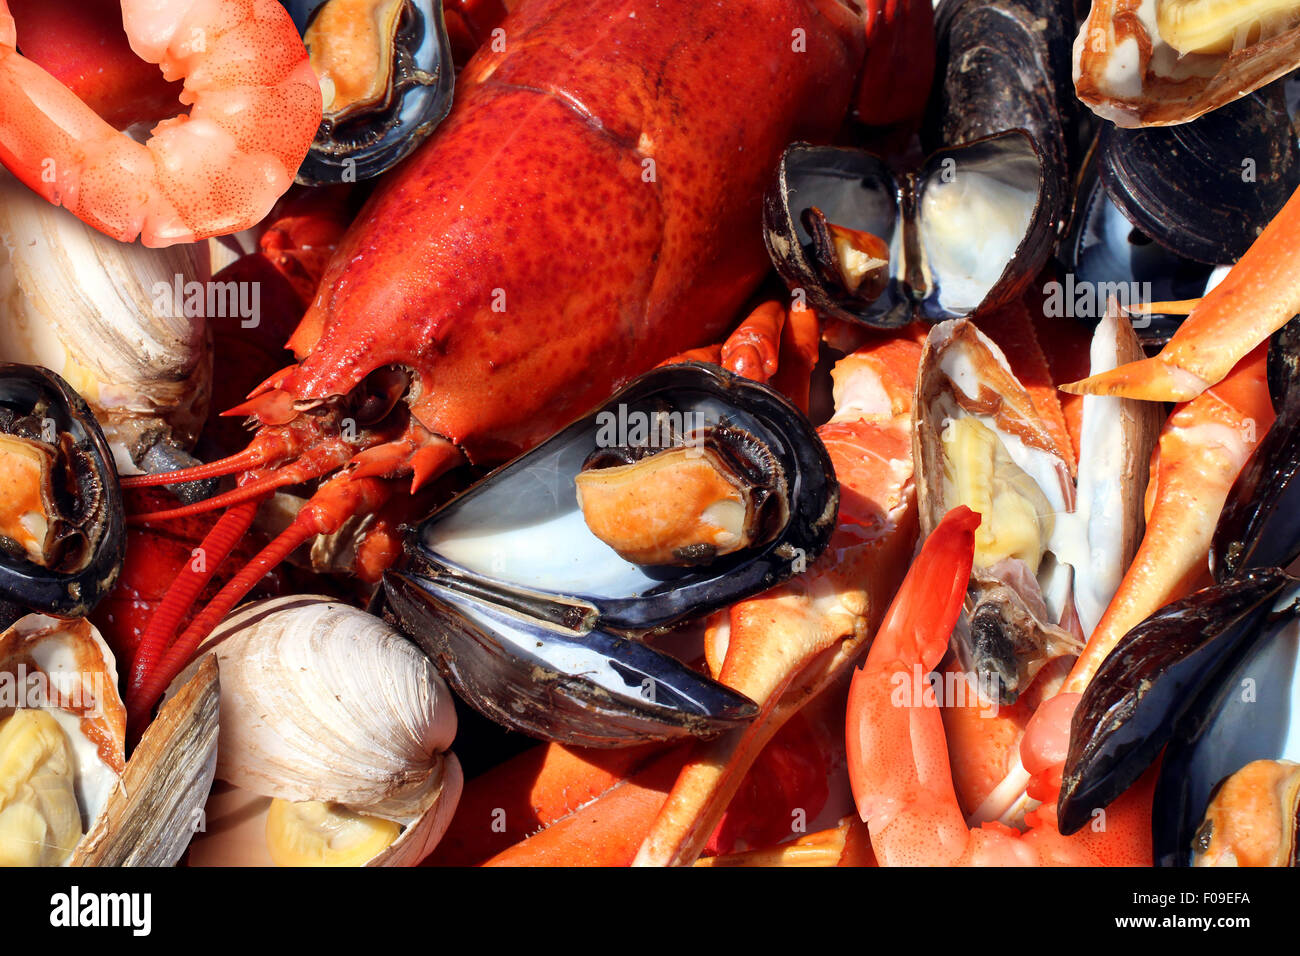 Schalentiere Teller mit Krustentieren Meeresfrüchten wie frischen Hummer gedämpfte Muscheln Muscheln Garnelen und Krabben als Ozean Gourmet-Abendessen Hintergrund. Stockfoto